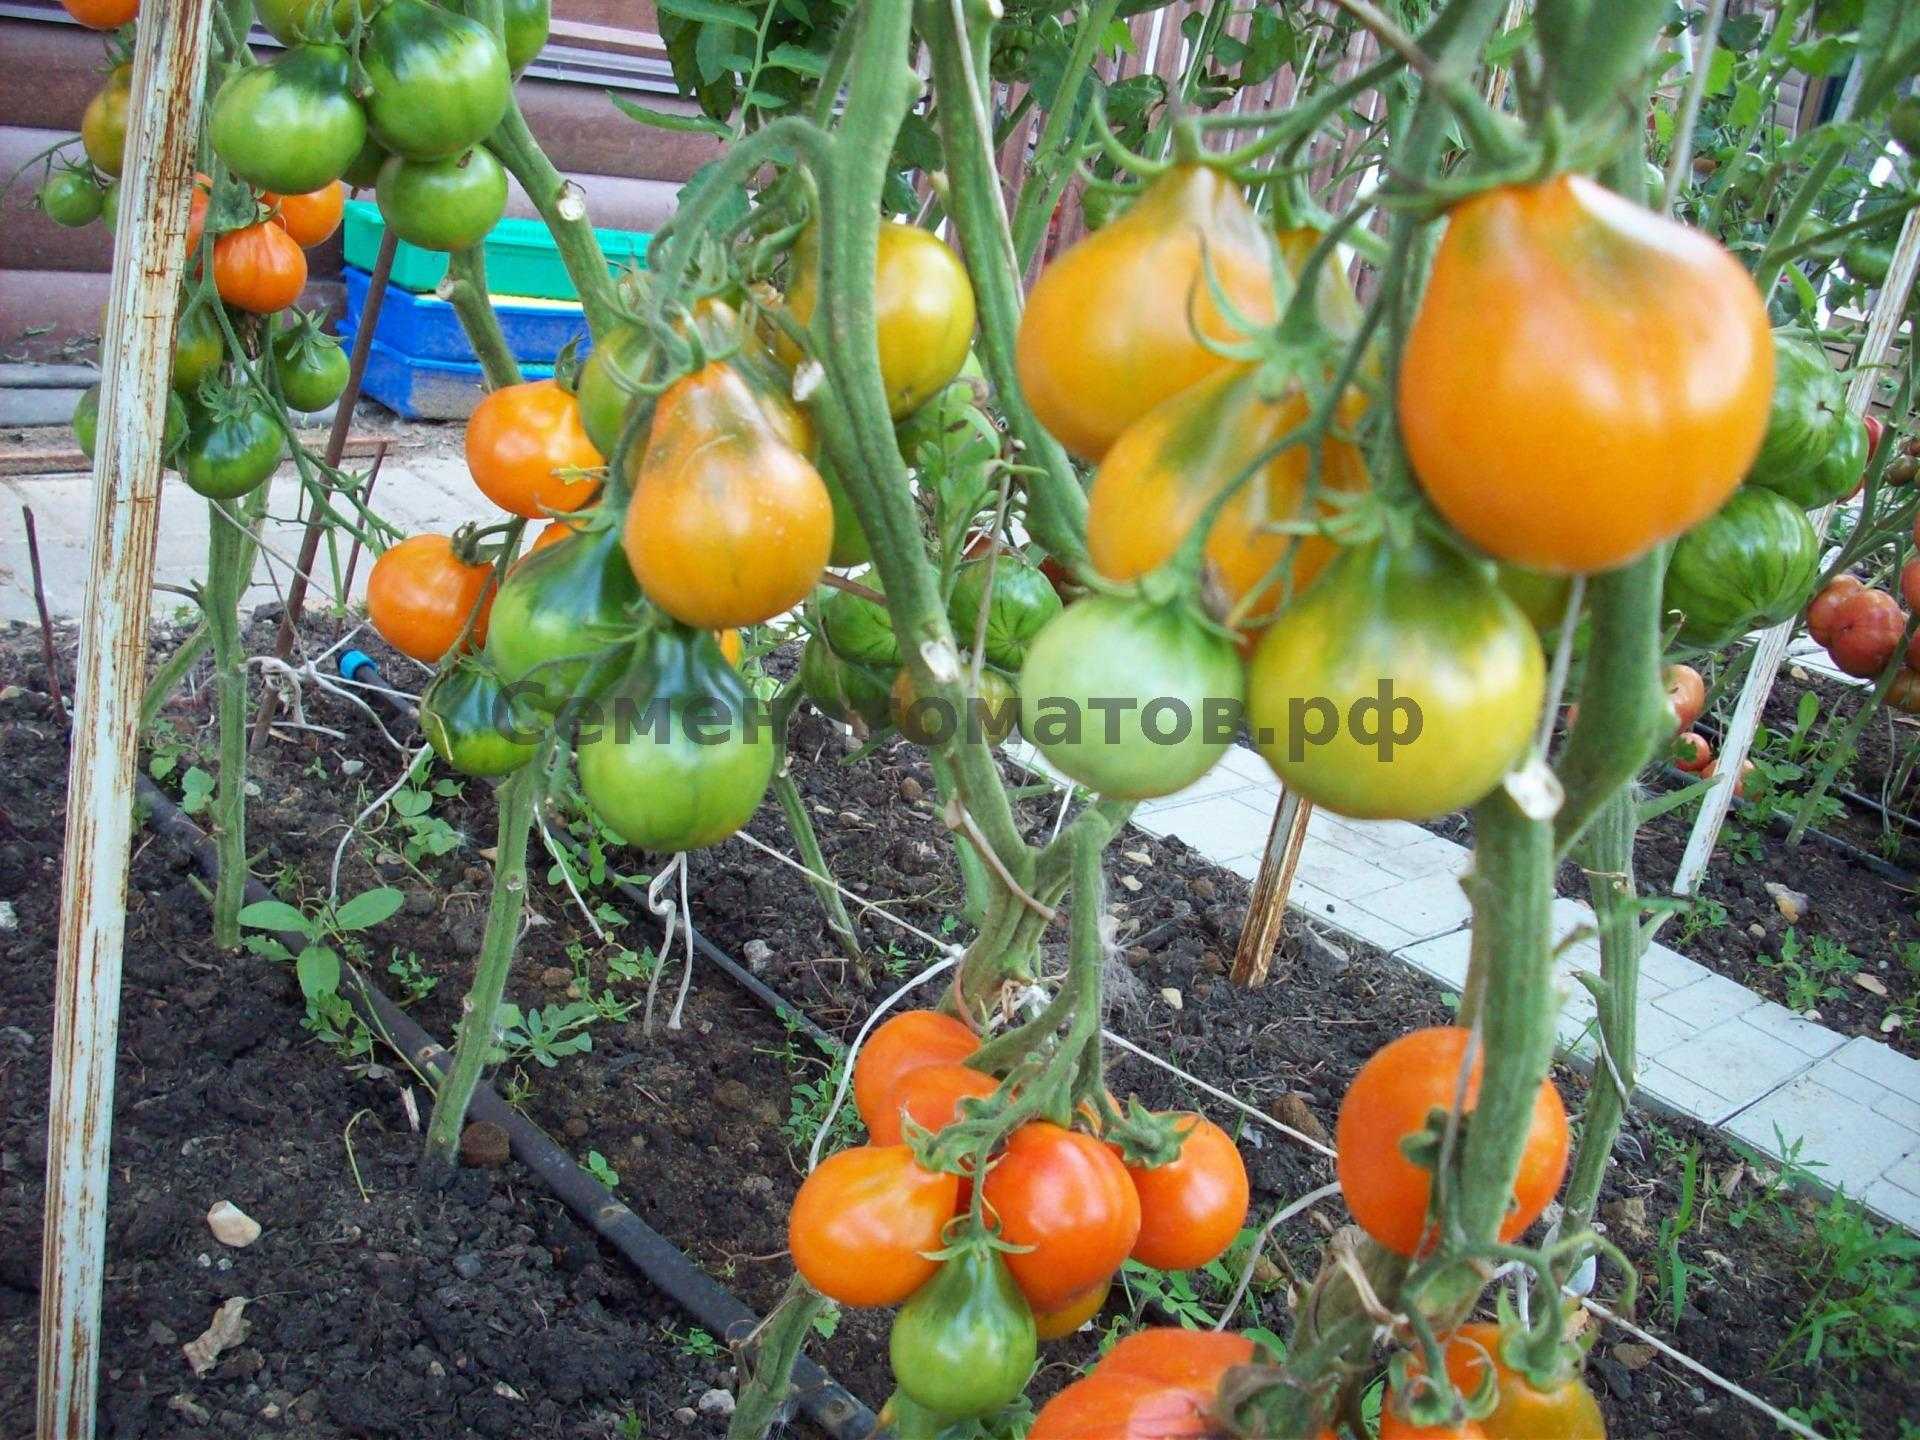 Мои любимые сорта томатов - огород